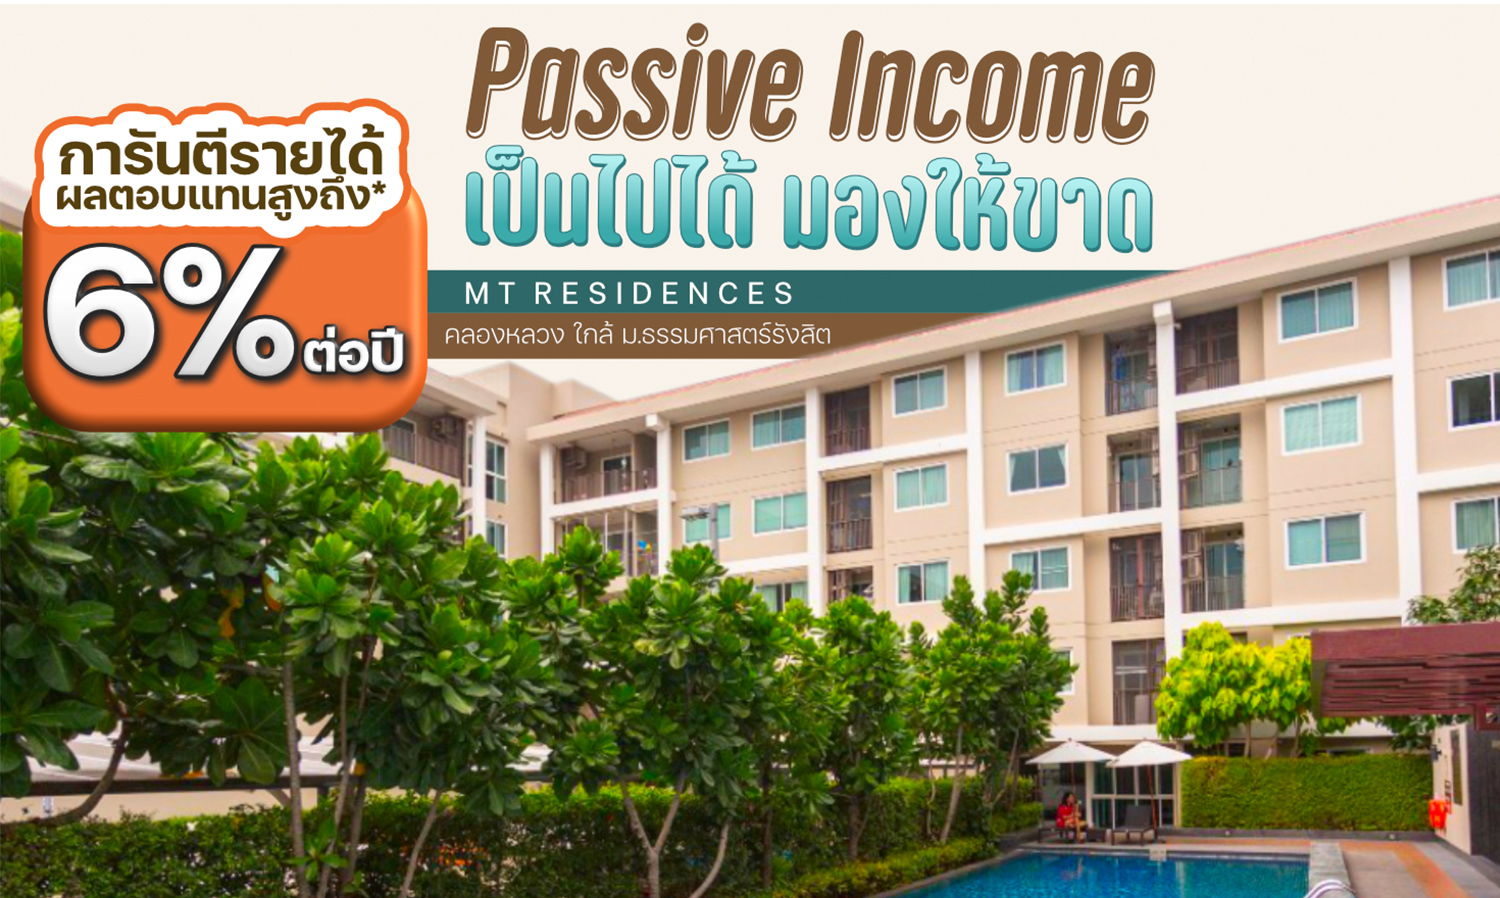 Passive Income ได้ง่ายๆ เป็นไปได้ มองให้ขาด! กับคอนโด MT Residences (คลองหลวง) มาครบพร้อมเฟอร์ ขนาด 68 ตรม. 2 นอน 2 น้ำ 